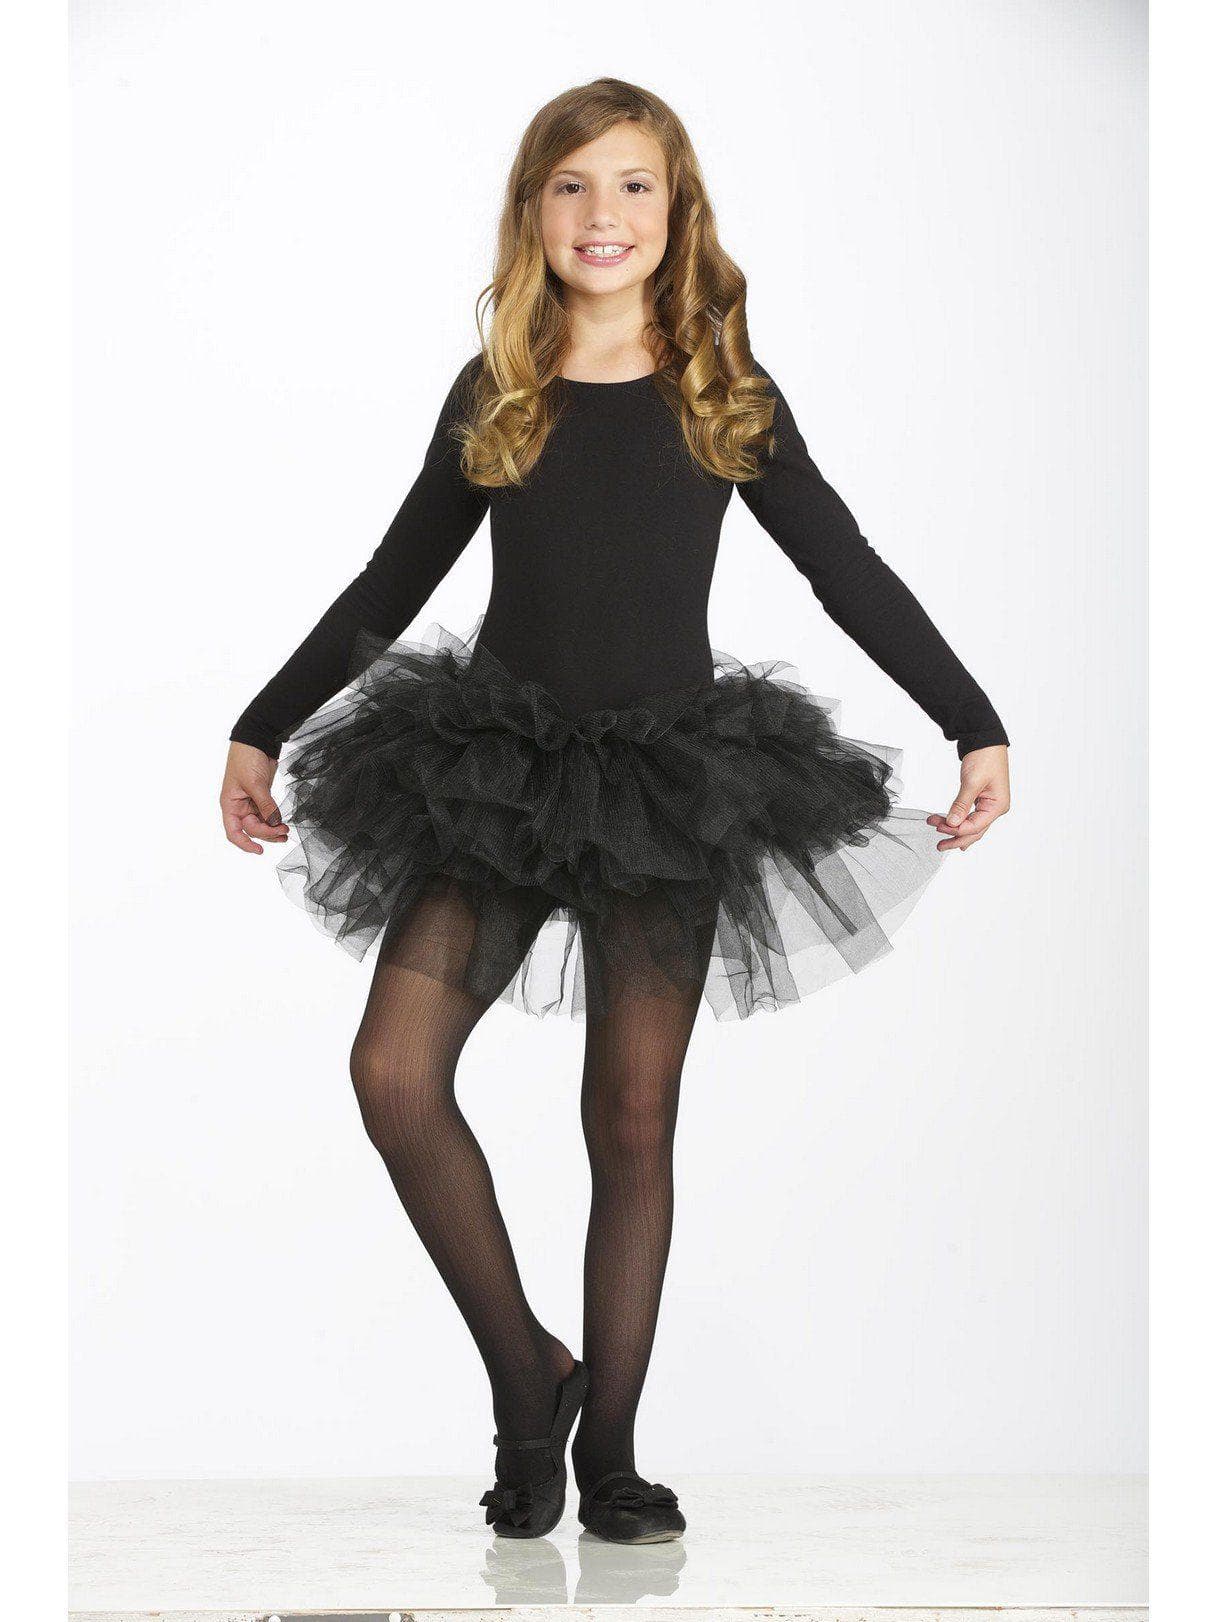 Girls' Black Tutu - costumes.com